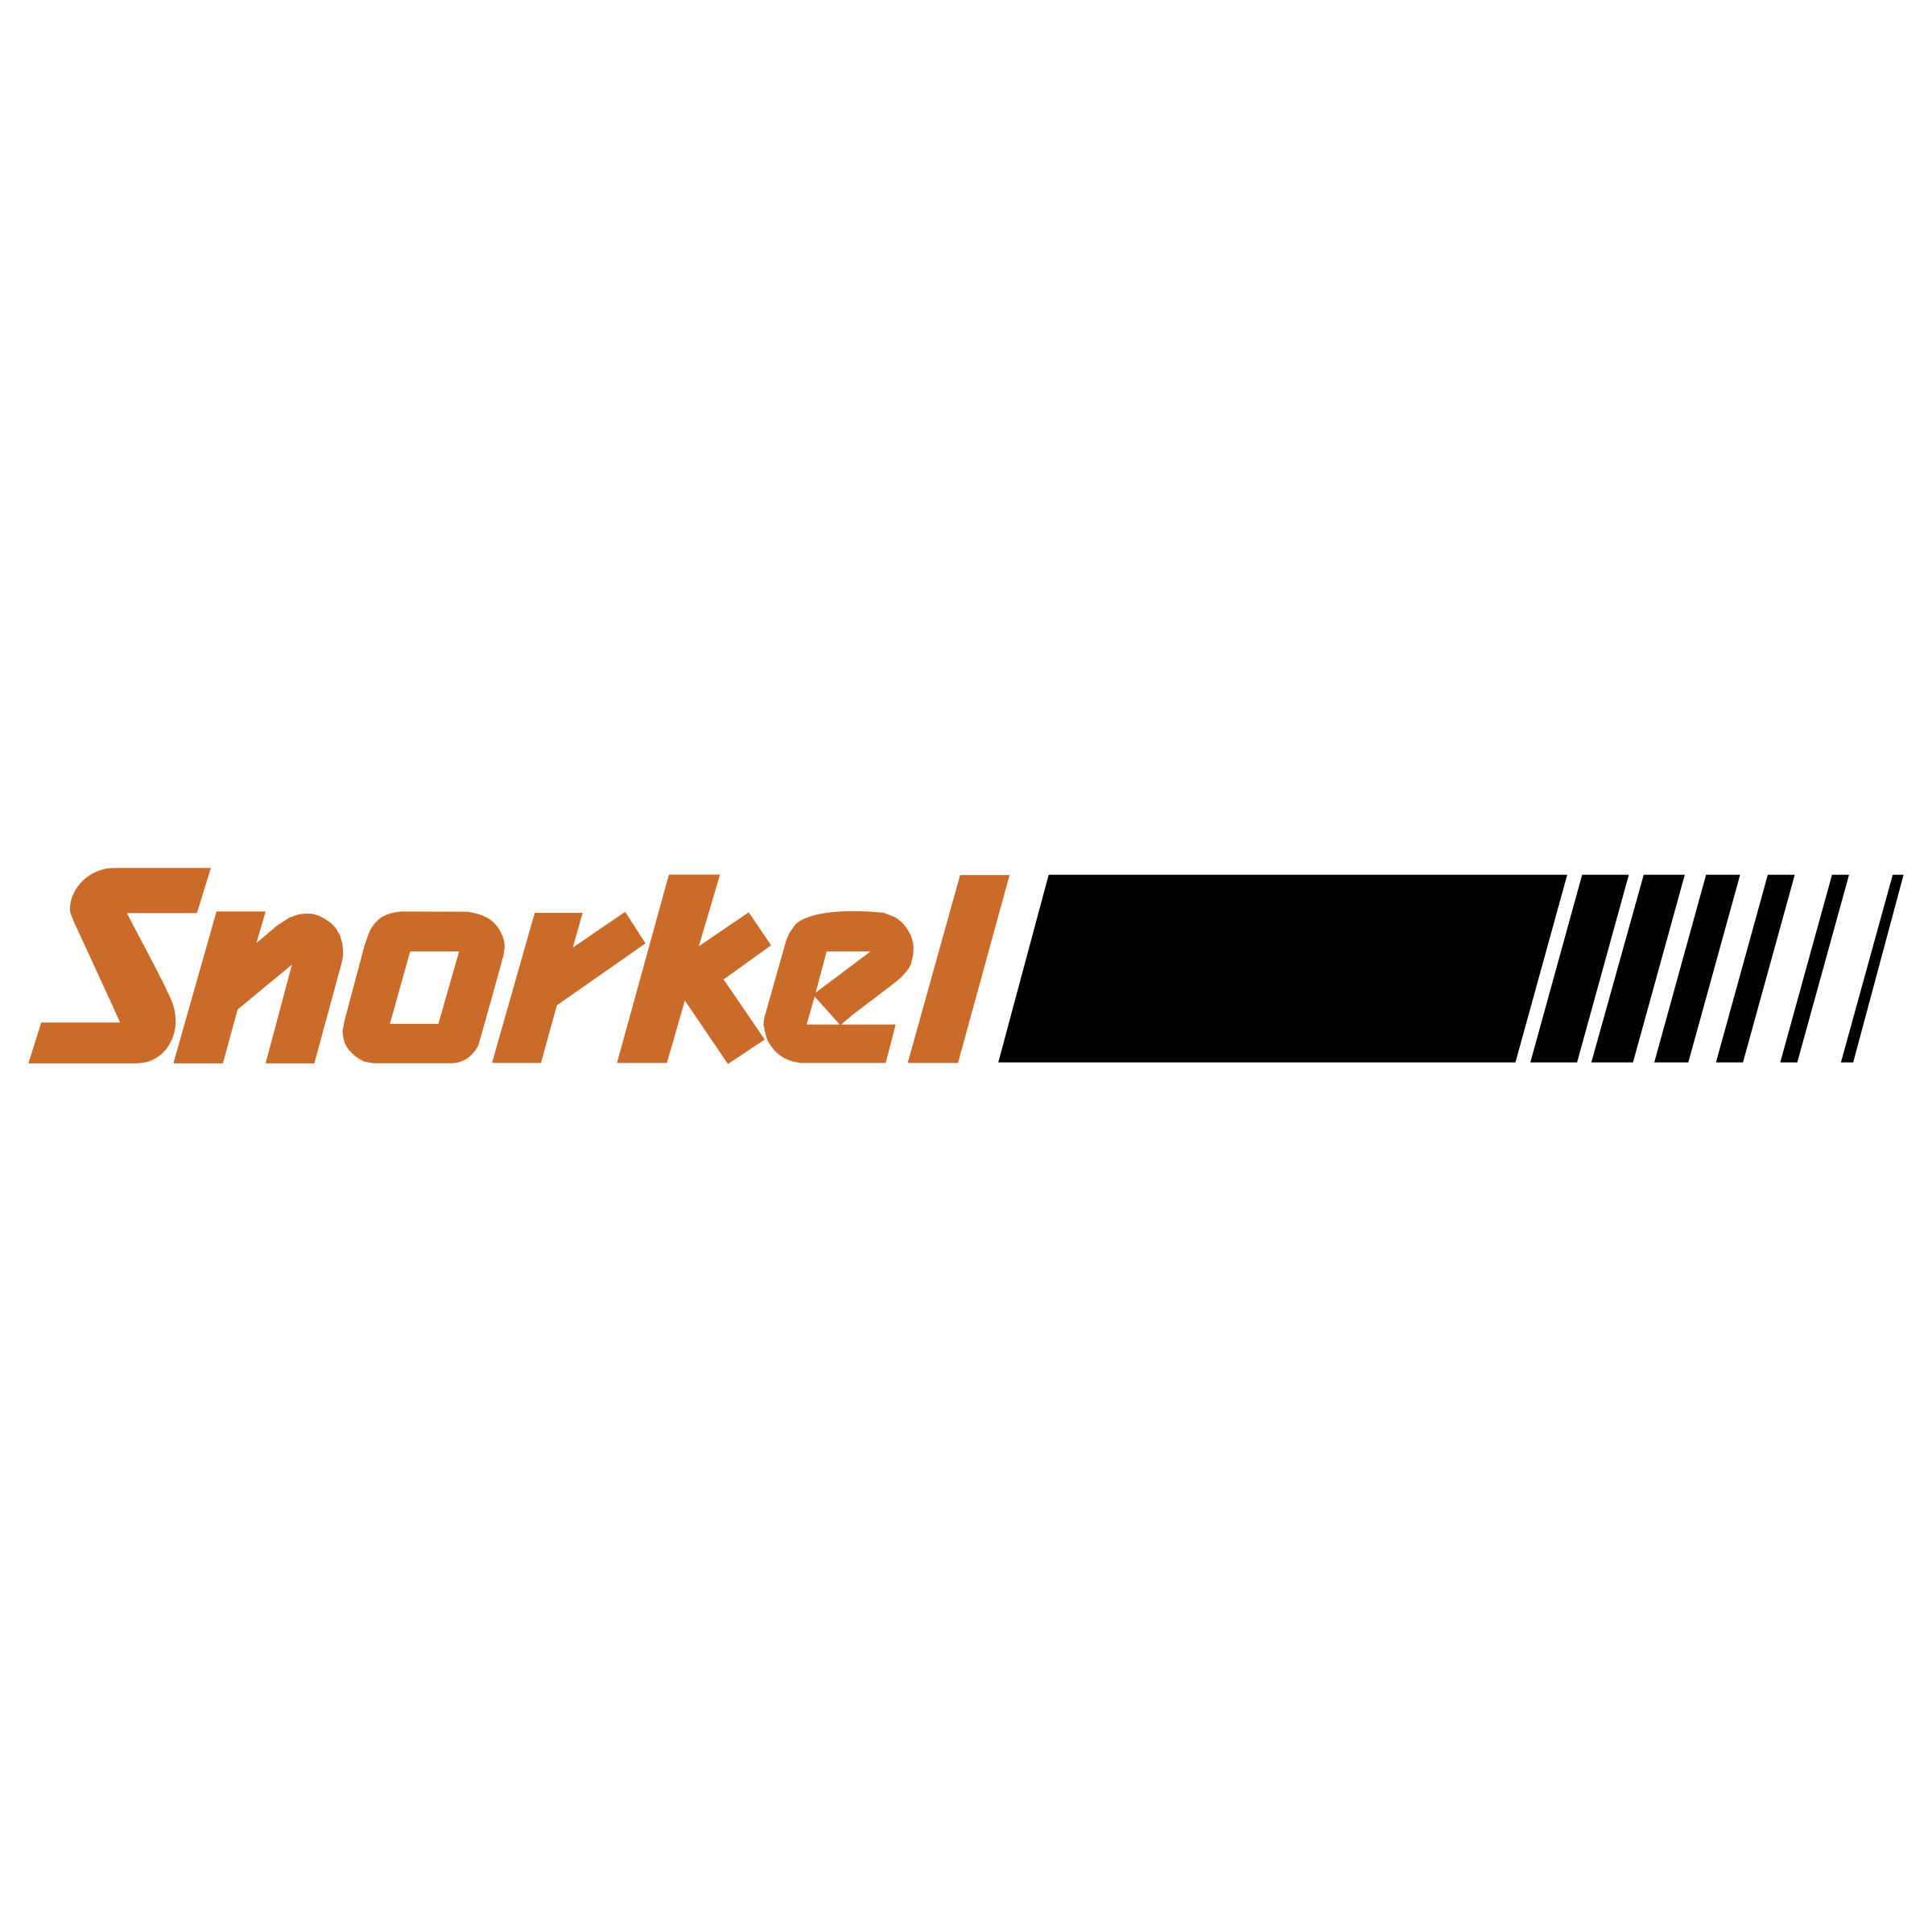 Snorkel Logo - Snorkel Logo PNG Transparent & SVG Vector - Freebie Supply